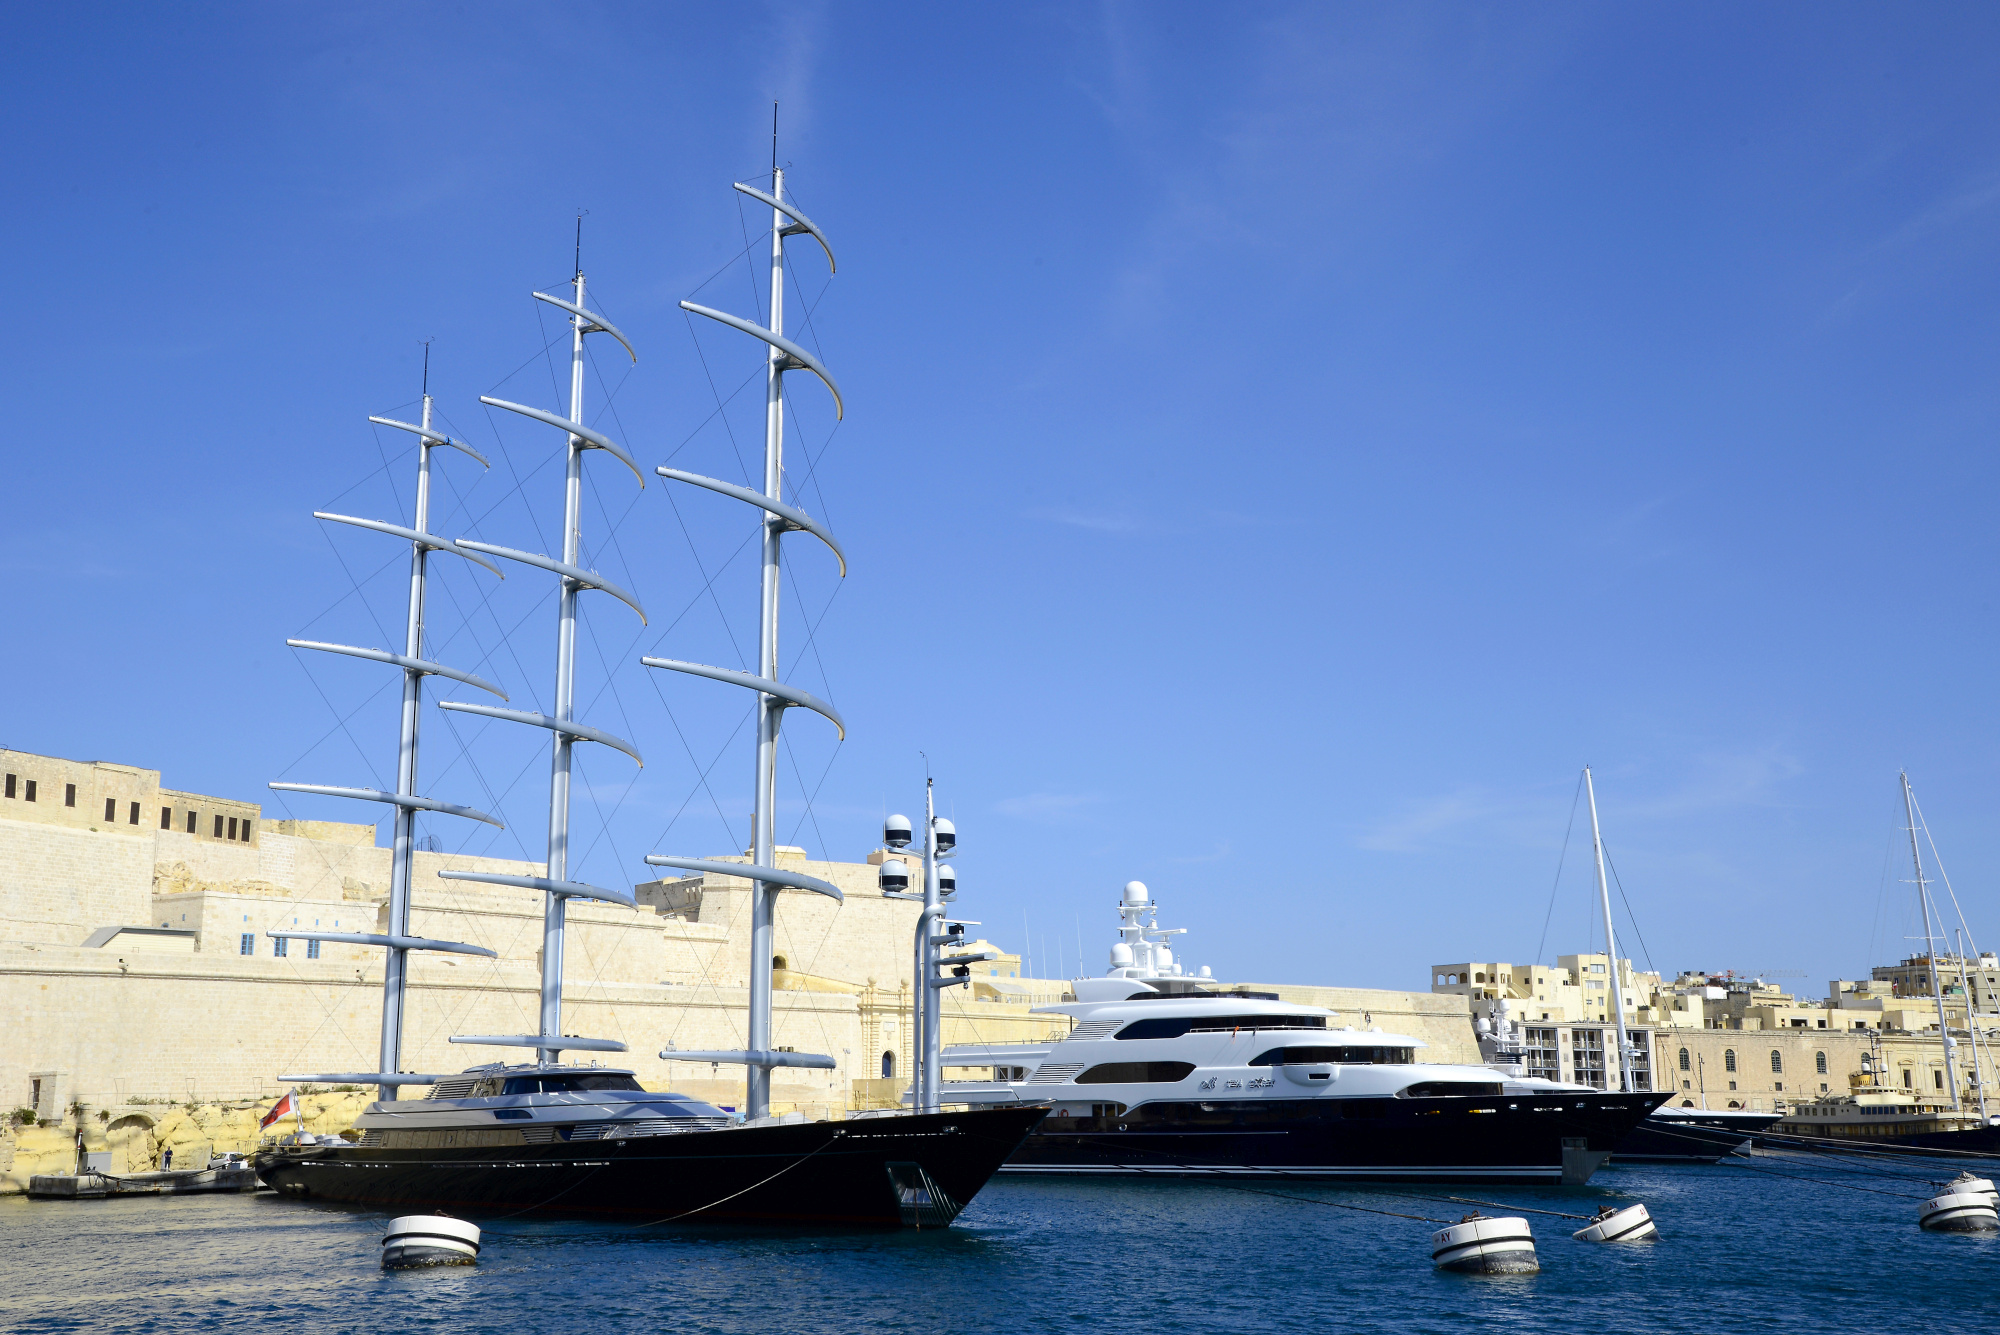 Maltese Falcon | La Valetta | Pictures | Malta in Global ...